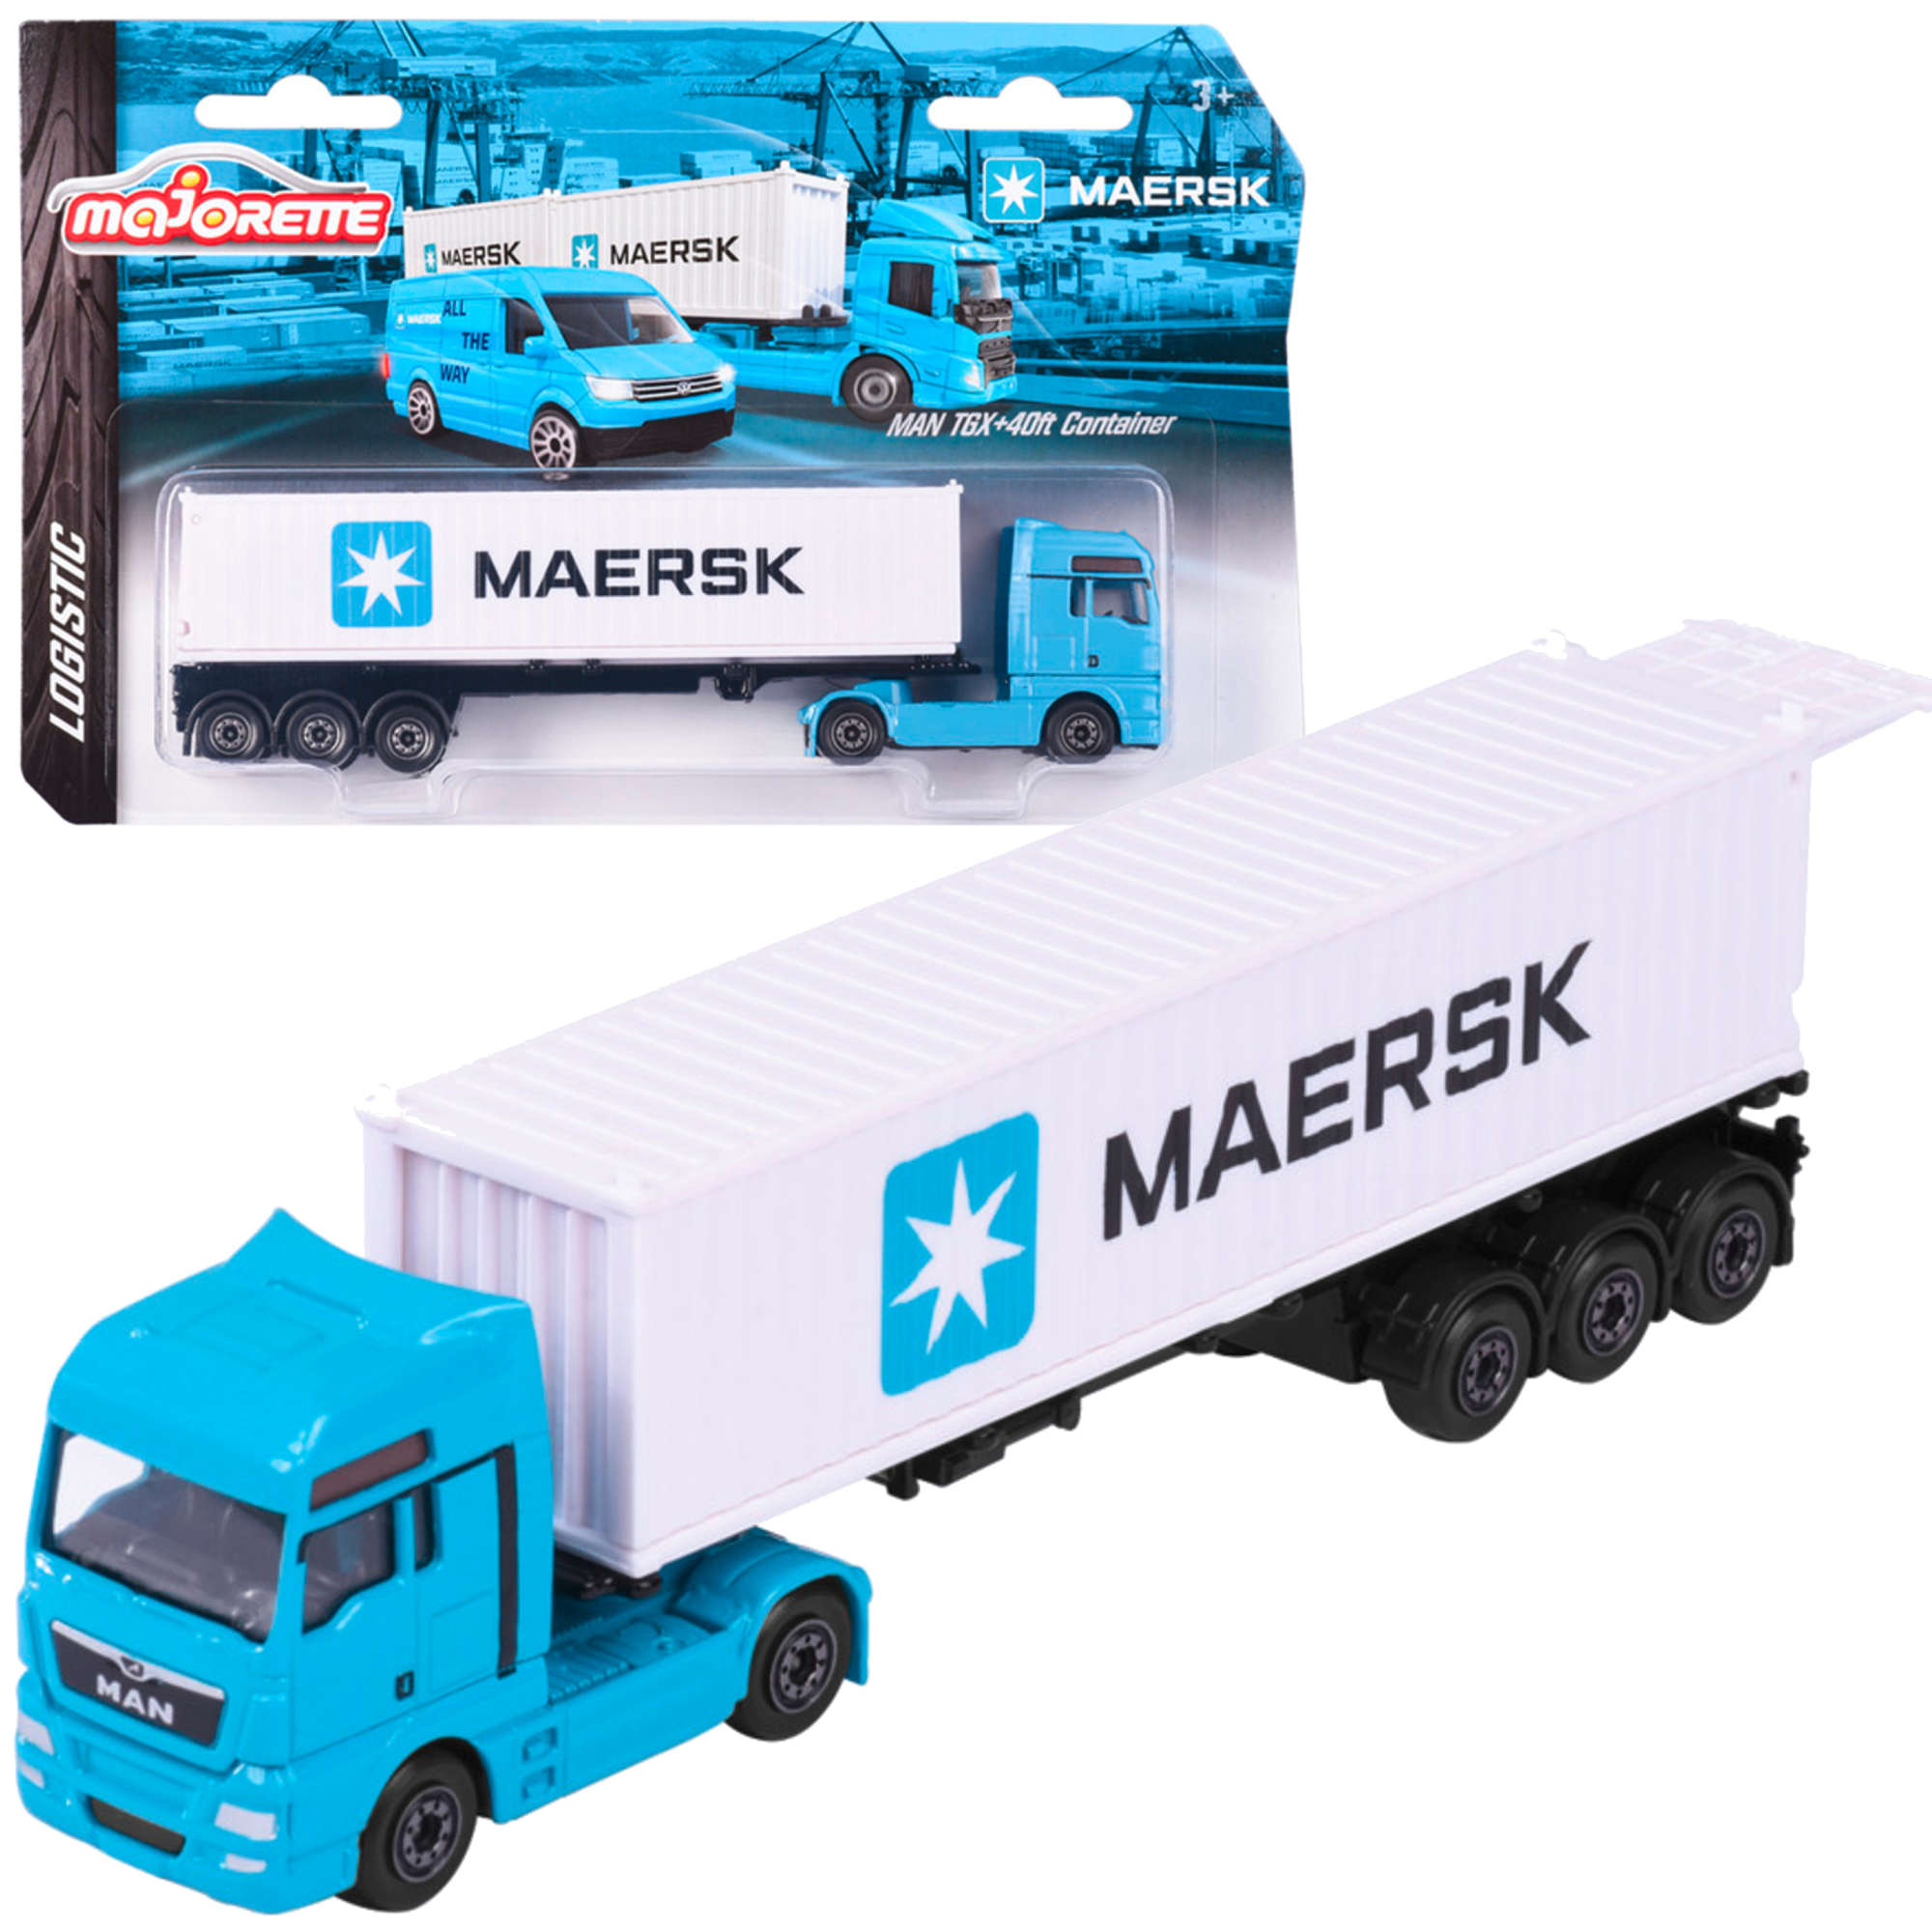 Ciarwka Maersk z kontenerem 40ft pojazd z ruchomymi elementami